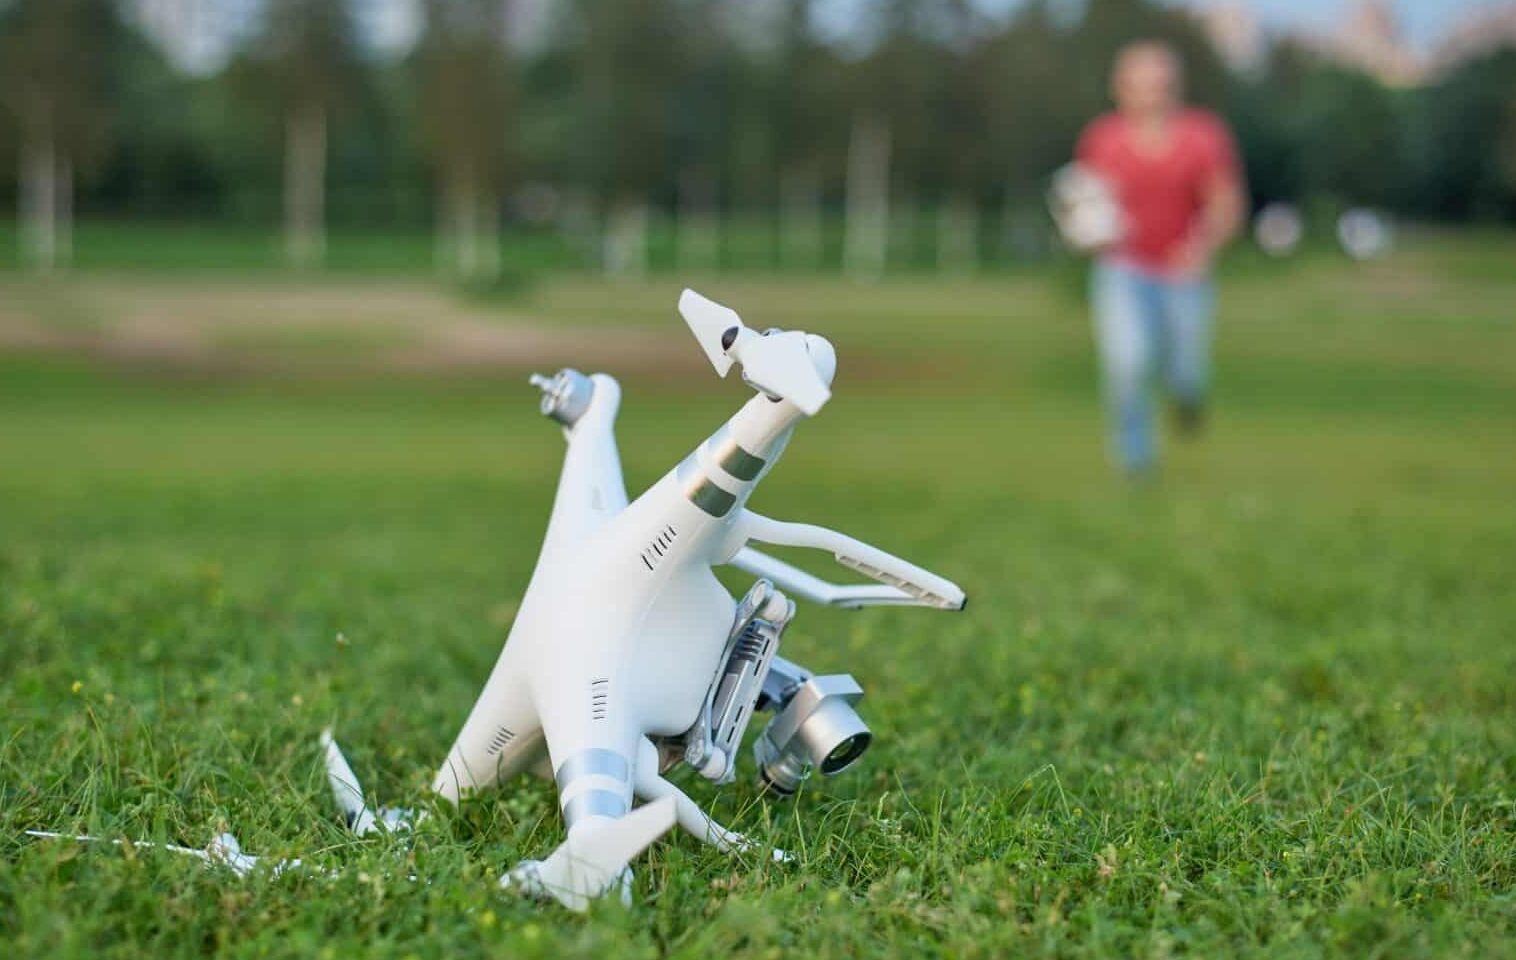 Drone crash - Drone Insurance